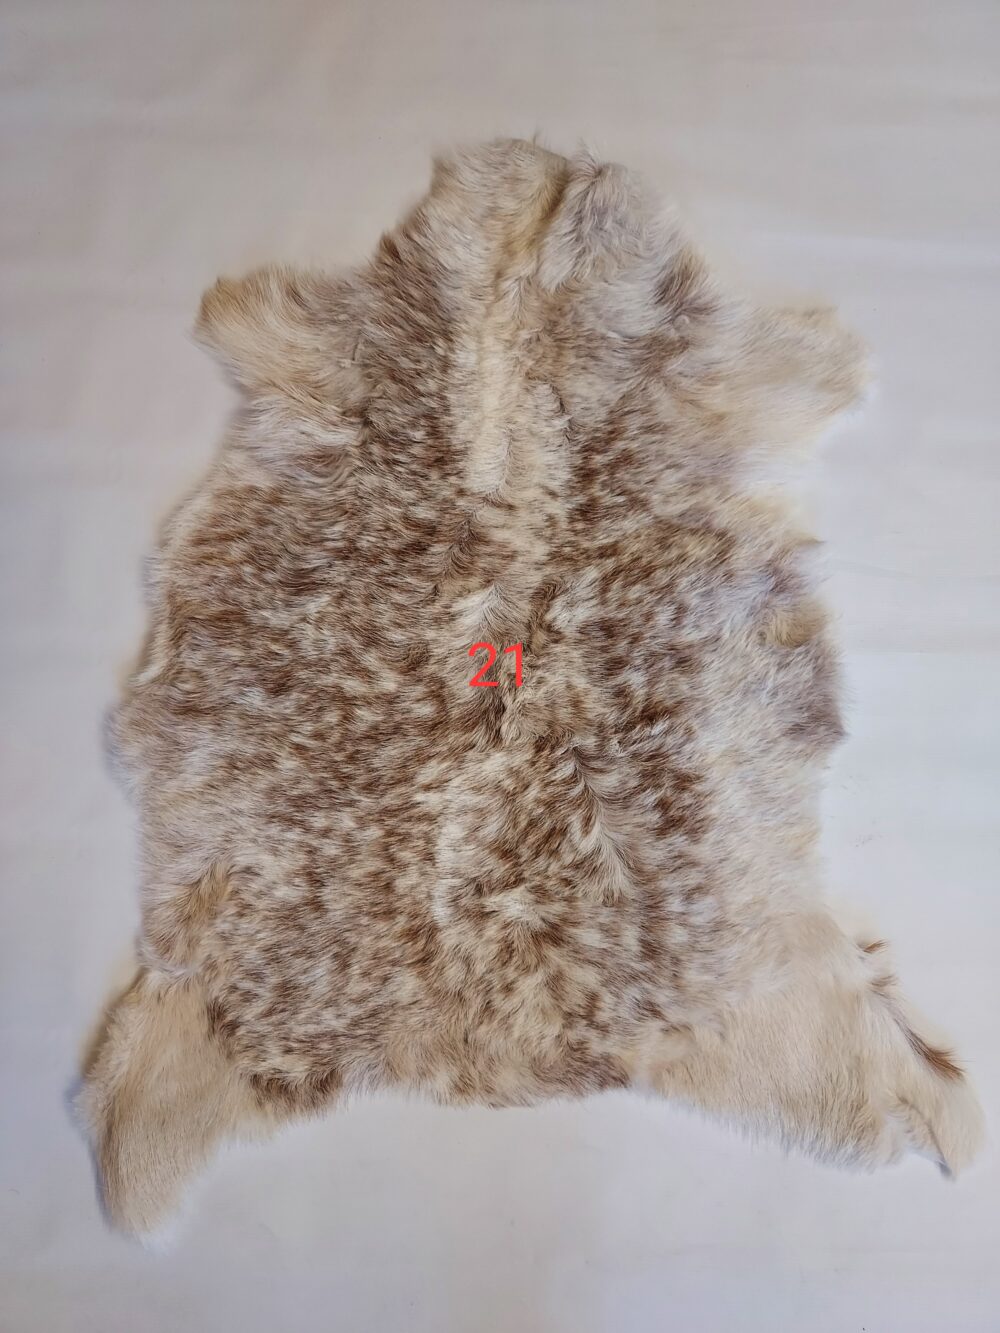 Decorative goat skin Decorative skins Producent owczych skór dekoracyjnych | Tannery Sheepskin | KalSkór 15